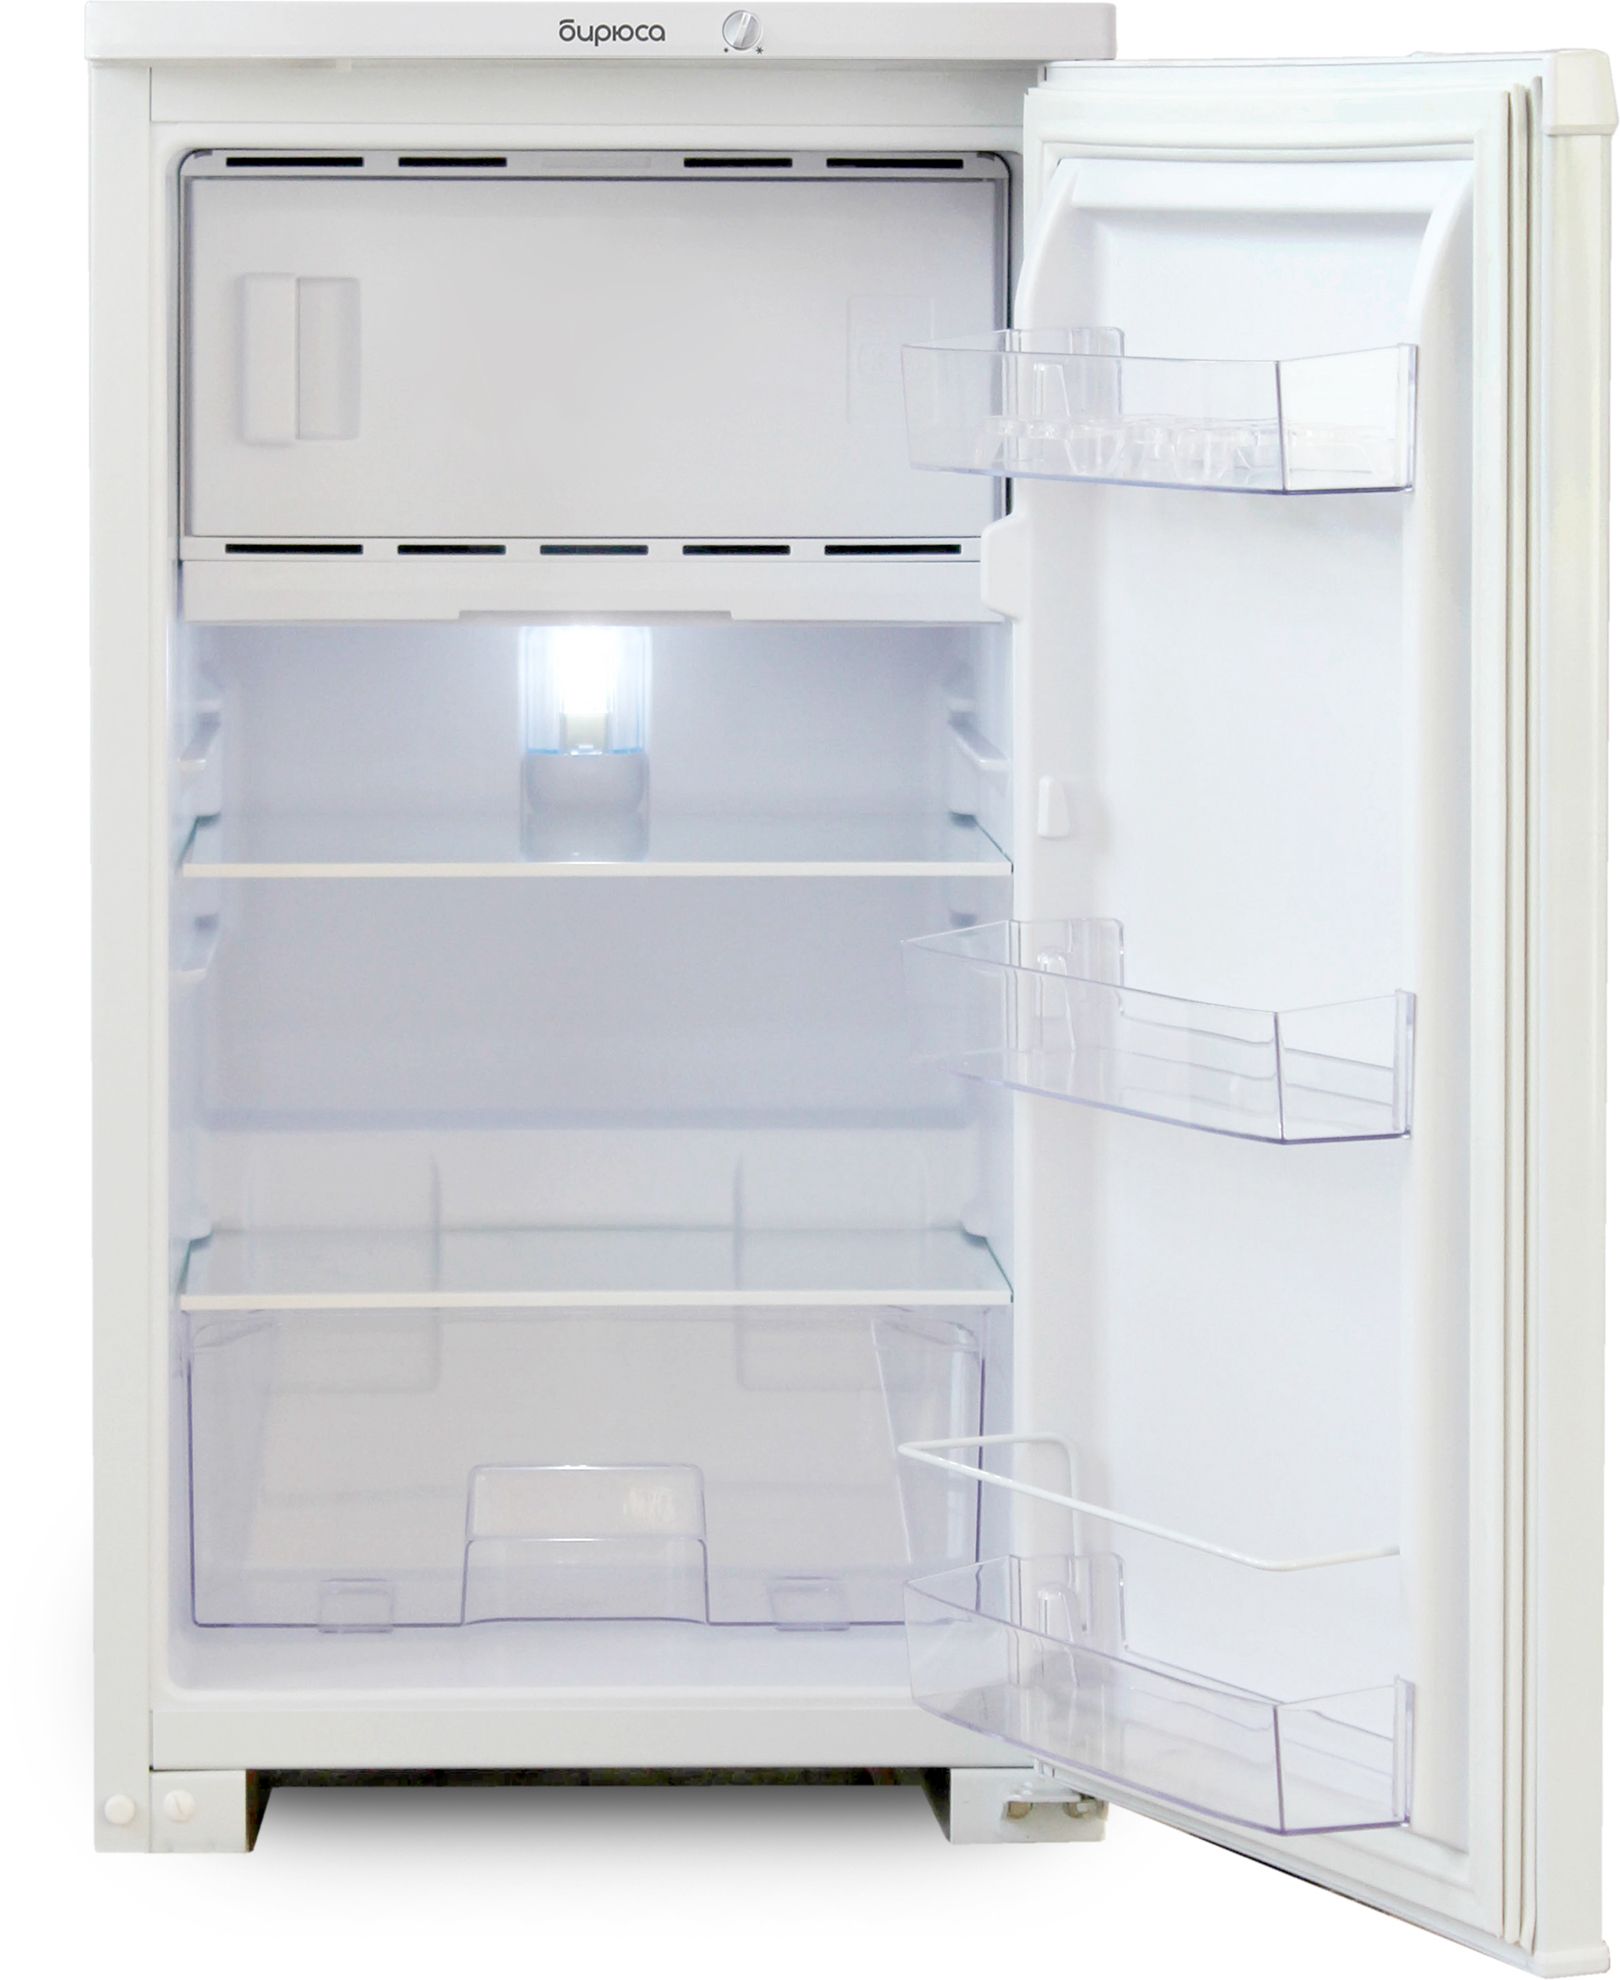 холодильник бирюса 108, купить в Красноярске холодильник бирюса 108,  купить в Красноярске дешево холодильник бирюса 108, купить в Красноярске минимальной цене холодильник бирюса 108